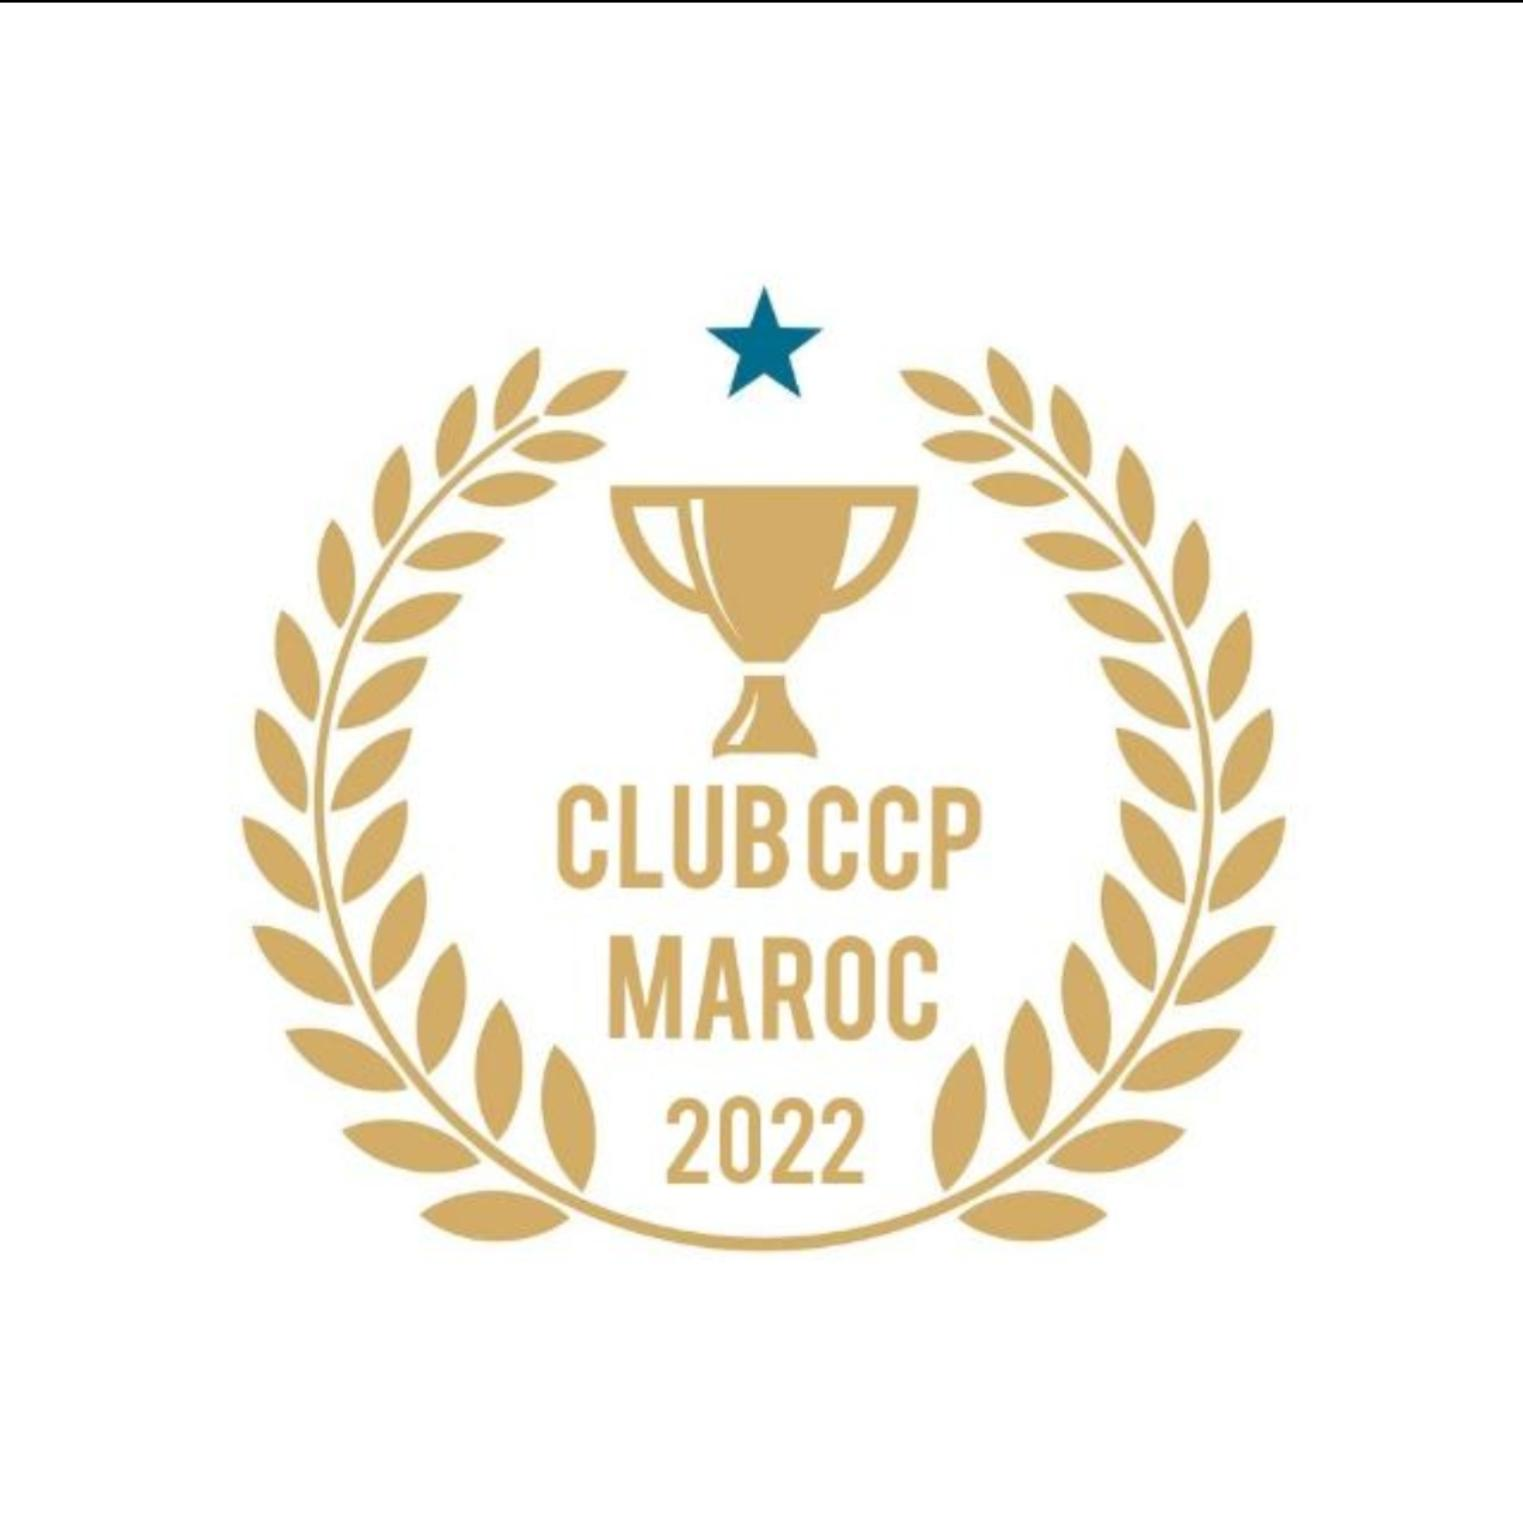 CLUB CCP MAROC 2022